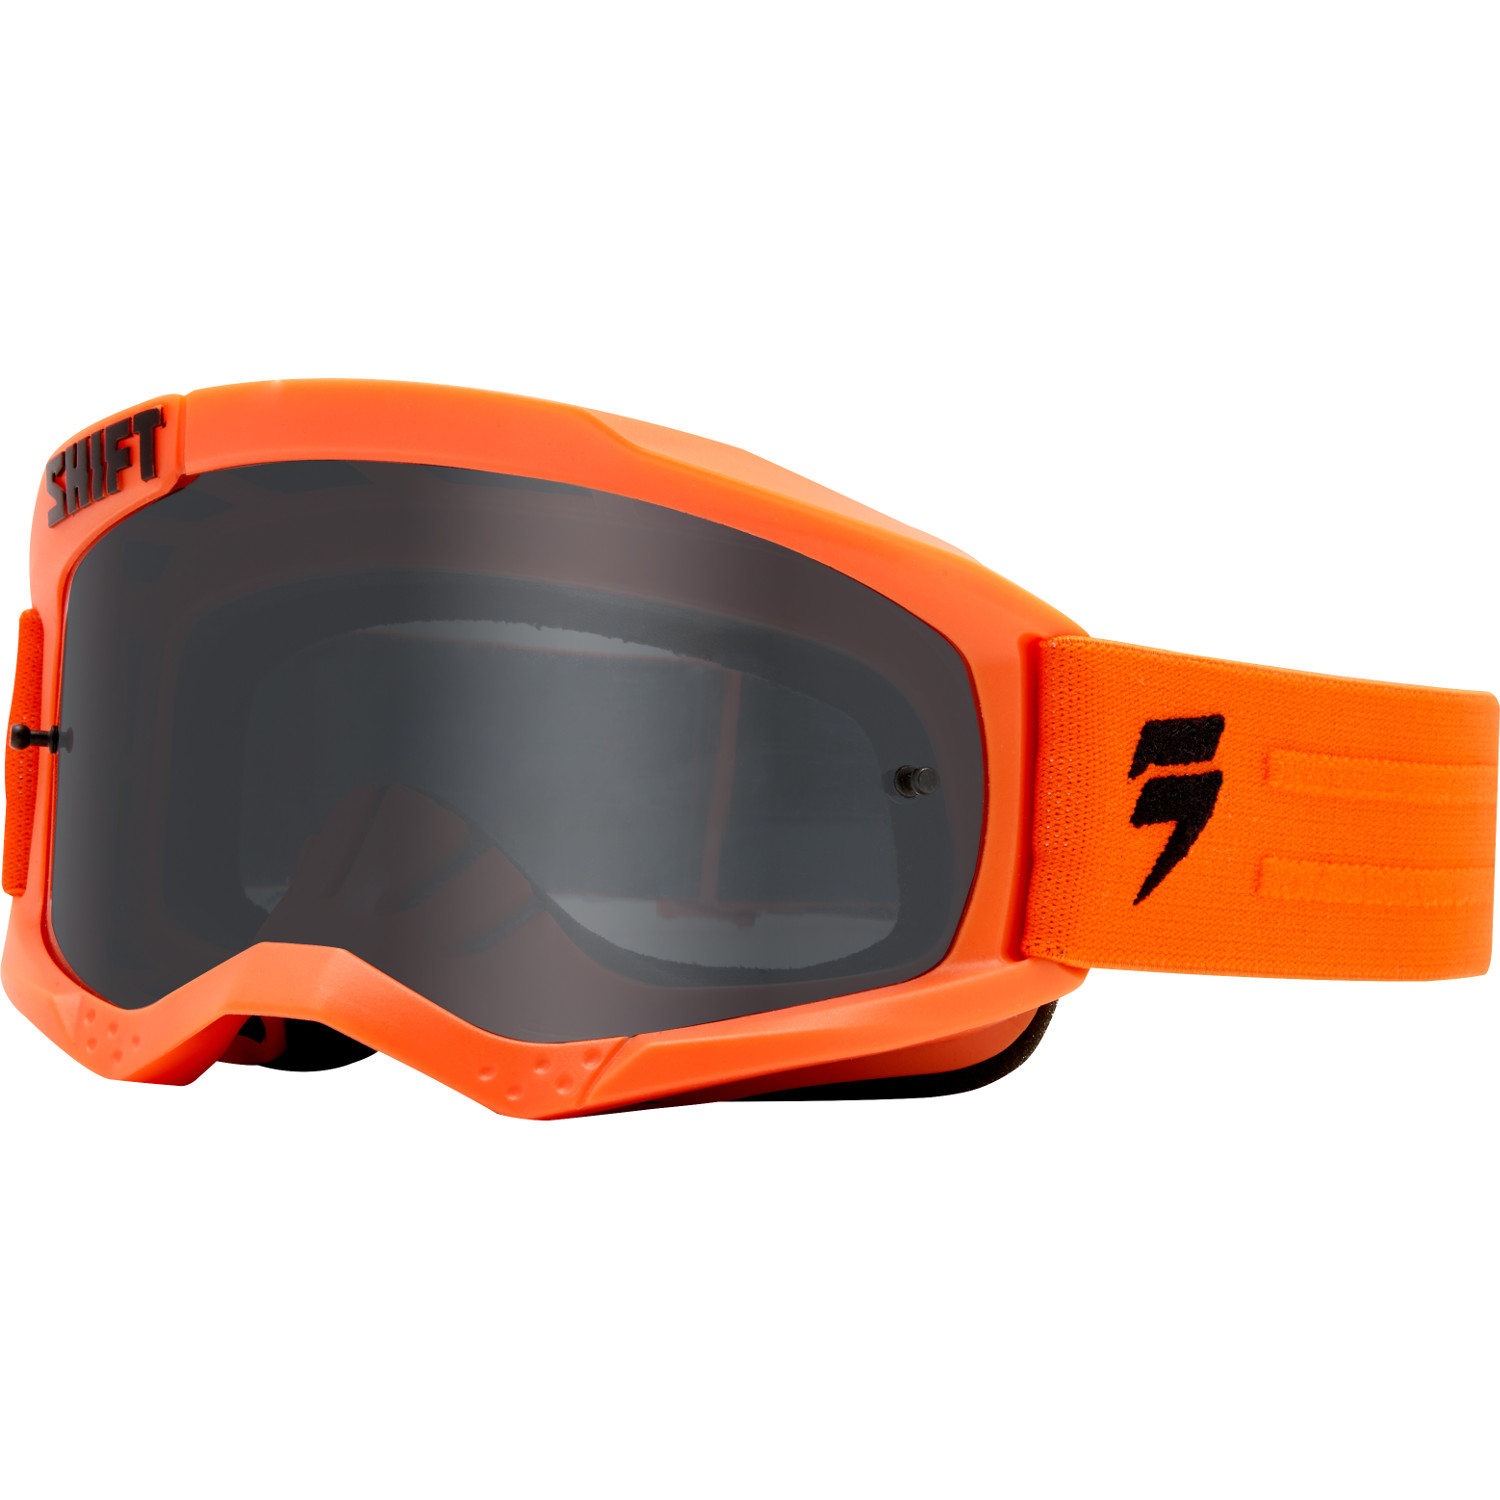 Shift Goggle Whit3 Label Orange Anti-Fog